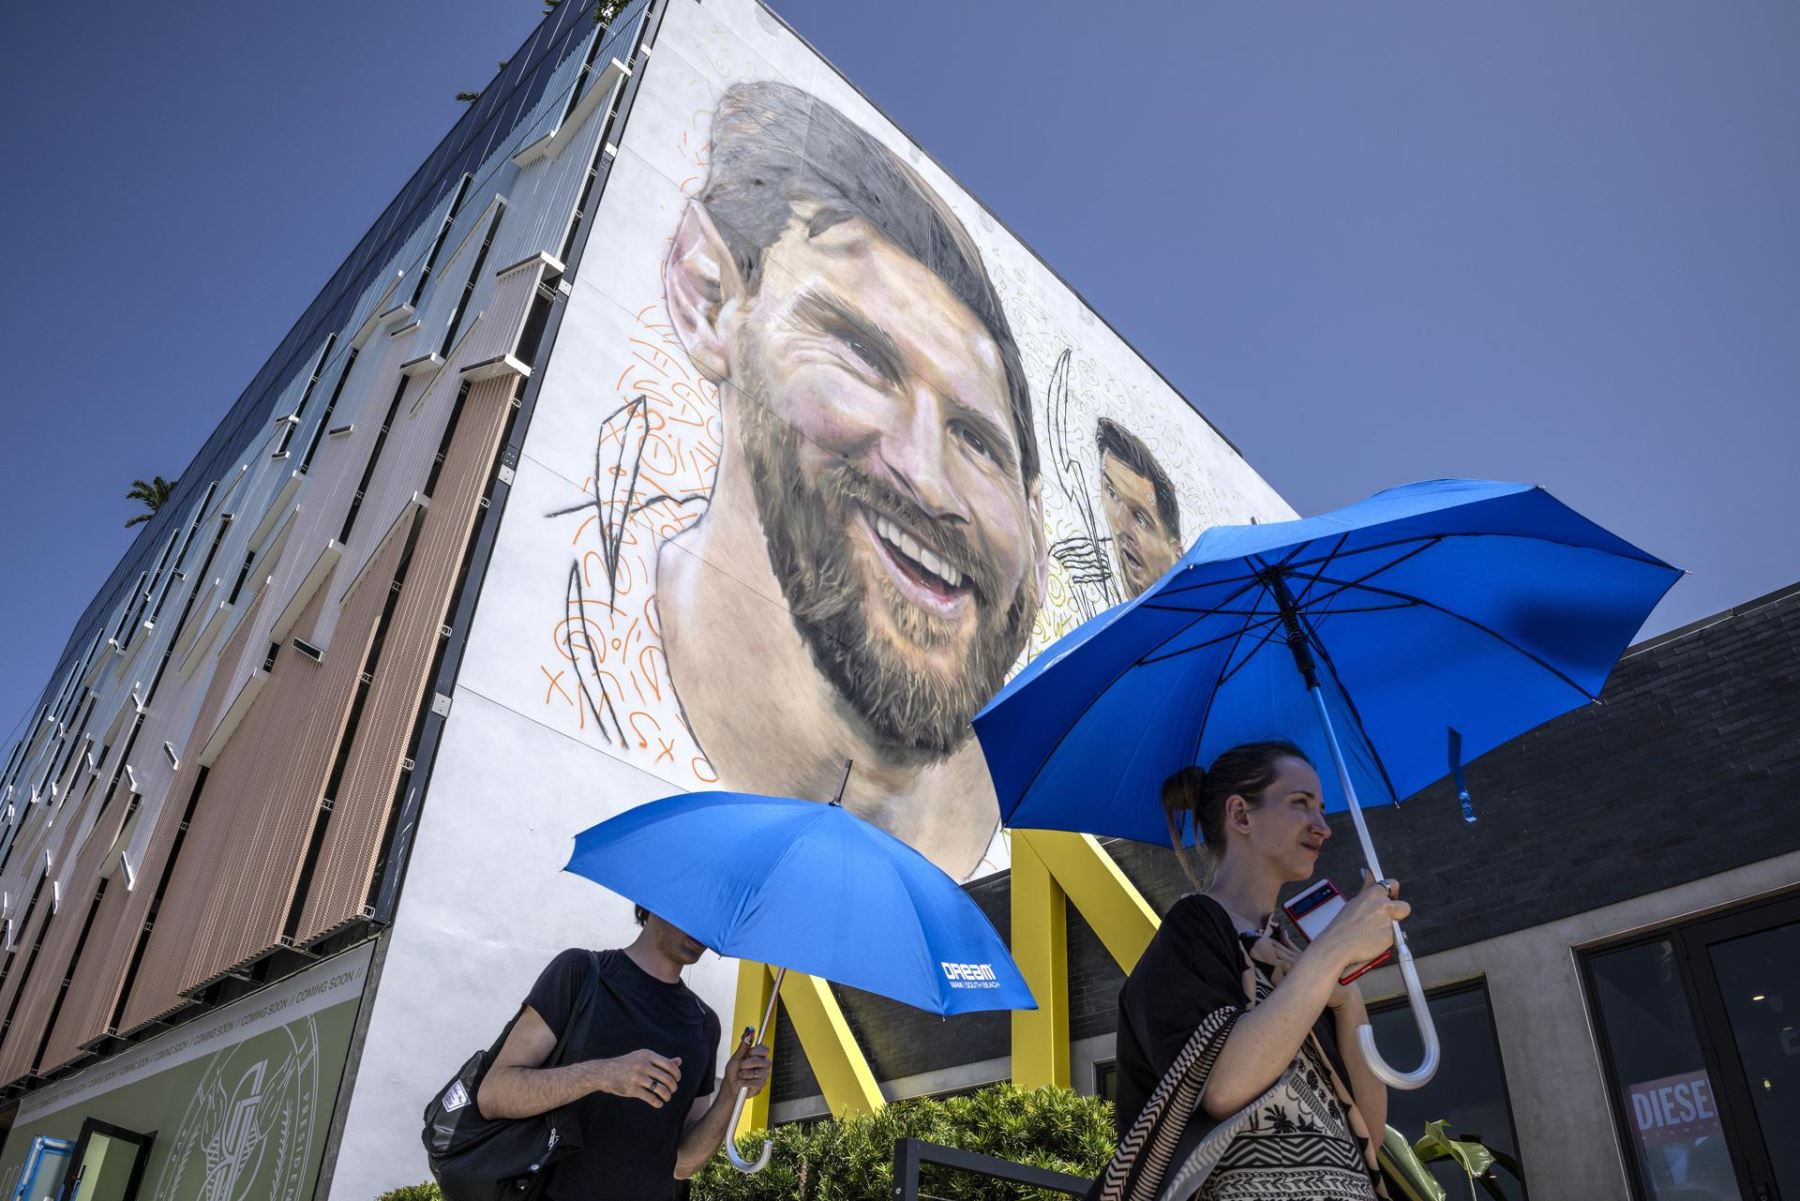 La gente camina cerca de un mural del futbolista argentino Lionel Messi que está siendo pintado por el artista argentino Maximiliano Bagnasco en un muro de siete pisos en Wynwood, Florida, EE.UU.
Foto: EFE